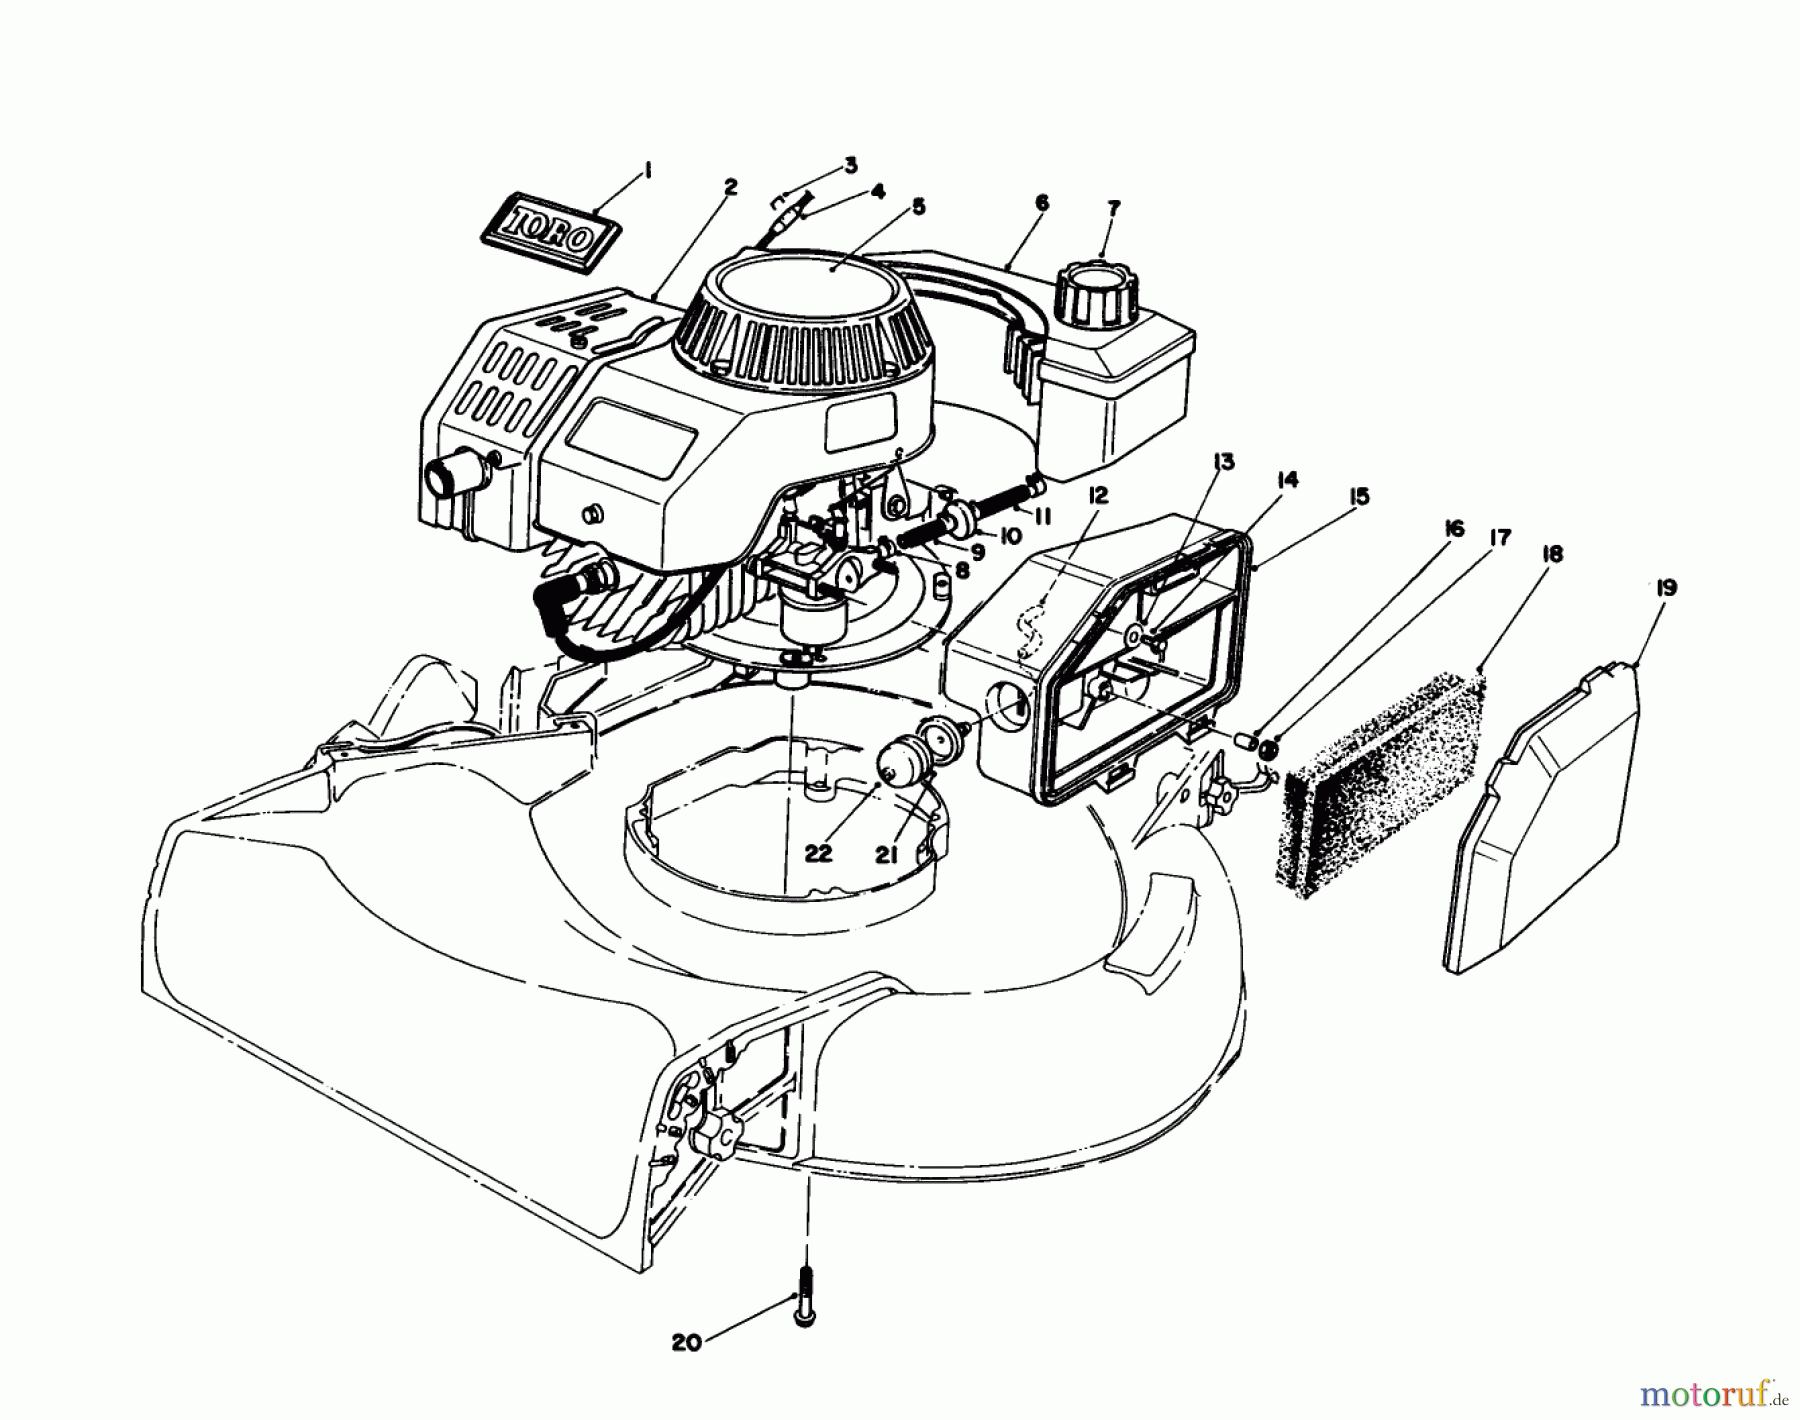  Toro Neu Mowers, Walk-Behind Seite 1 16585C - Toro Lawnmower, 1988 (8000001-8999999) ENGINE ASSEMBLY